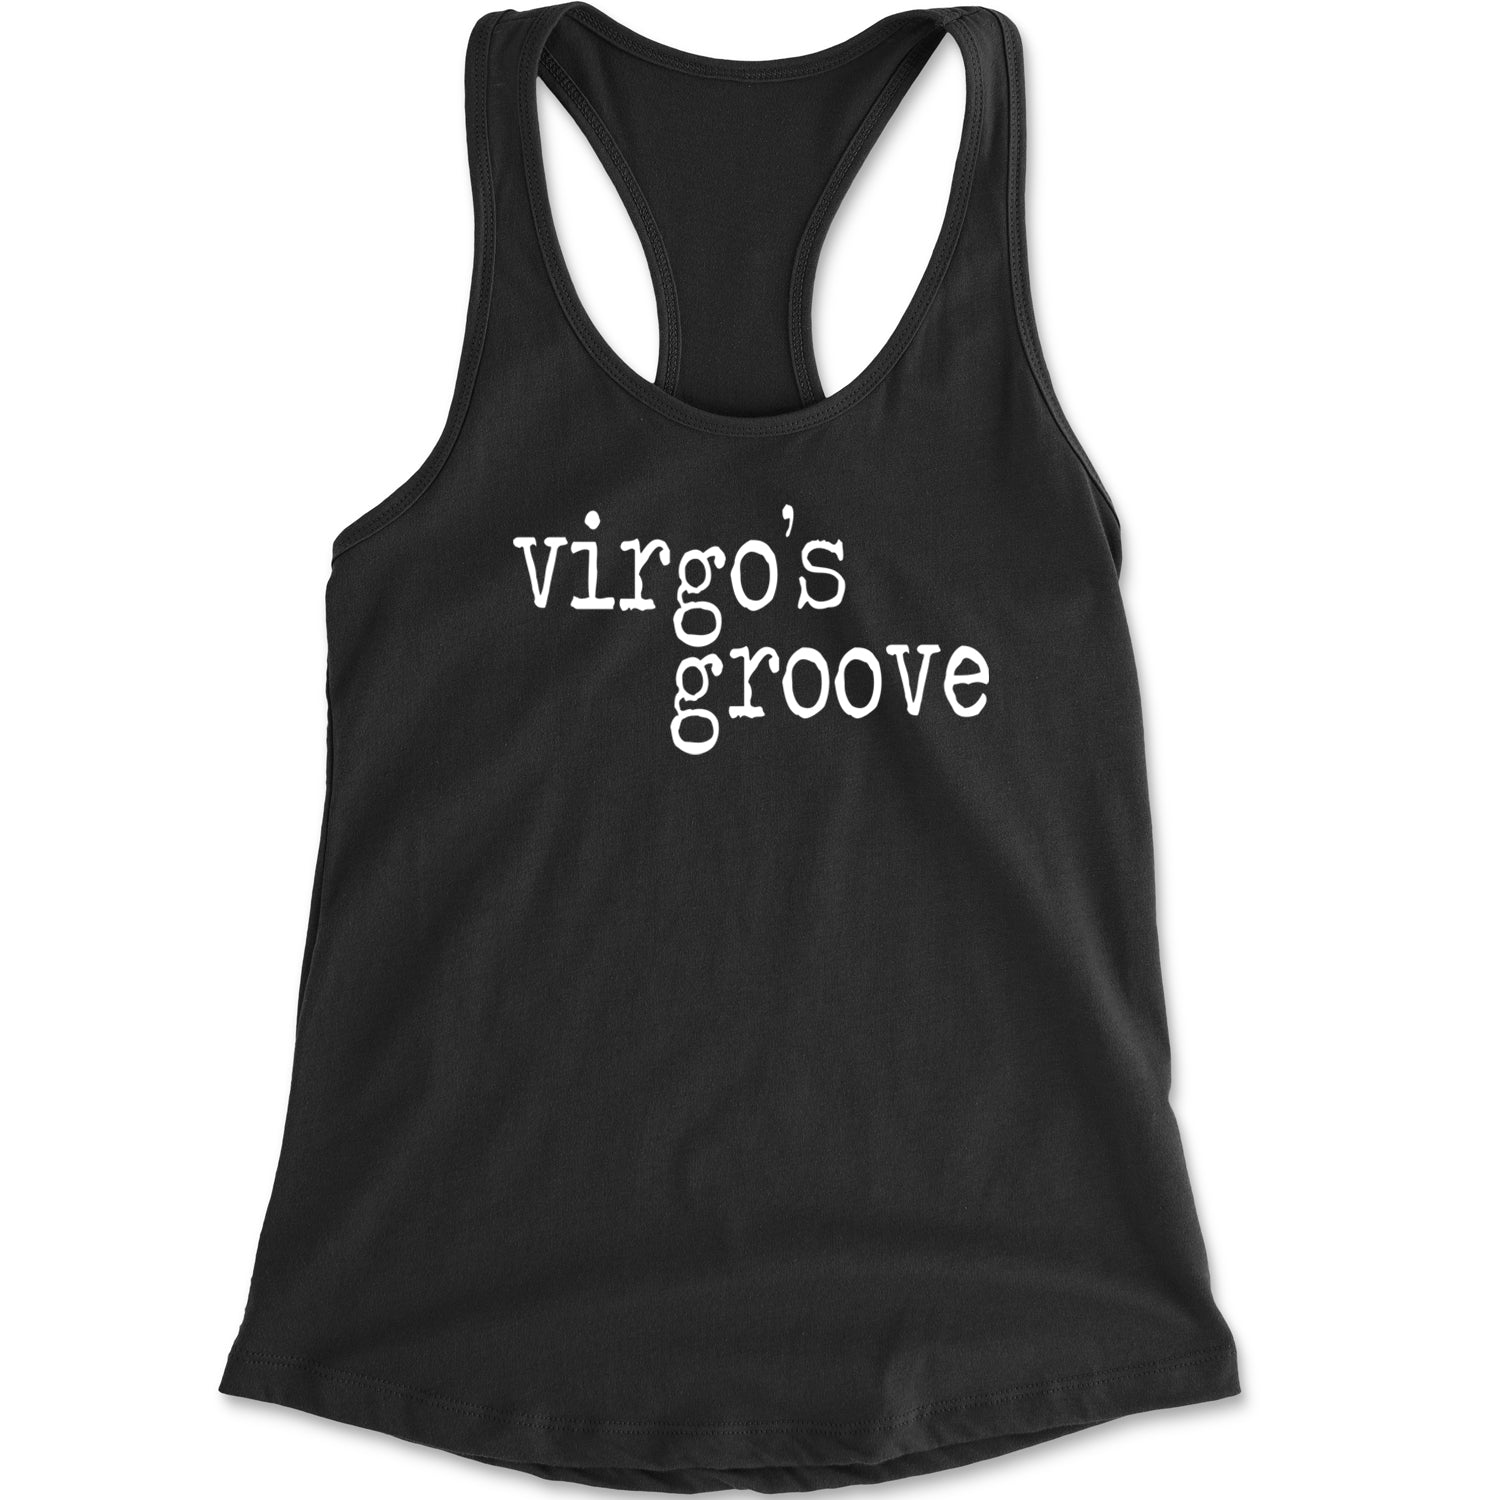 Virgo's Groove Renaissance Racerback Tank Top for Women